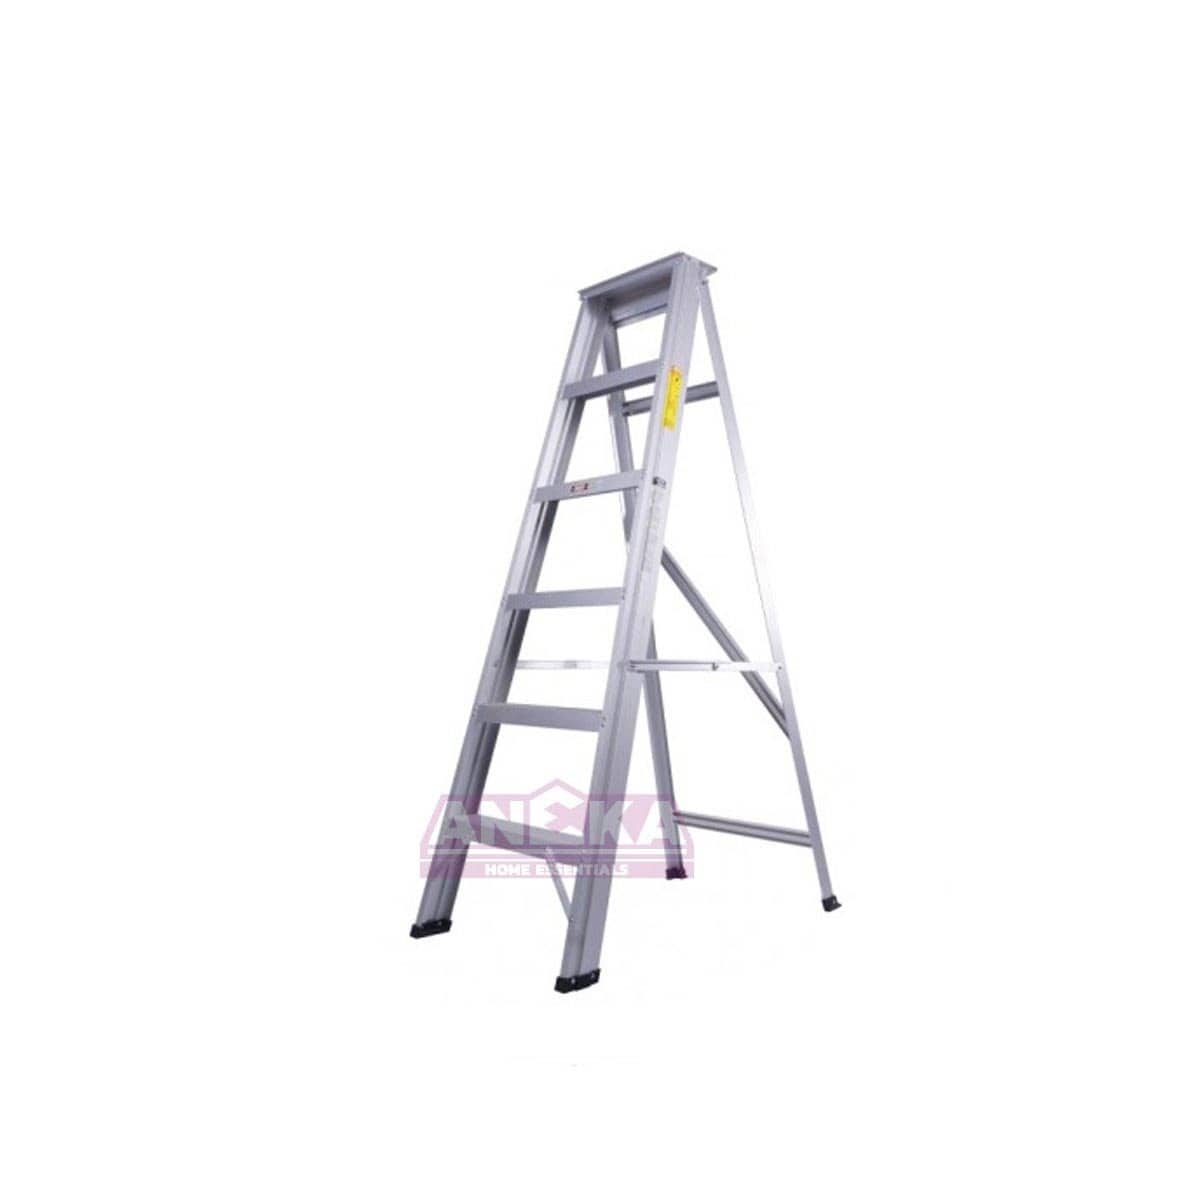 SUMO KING Heavy Duty Single Sided Ladder (9 STEPS)